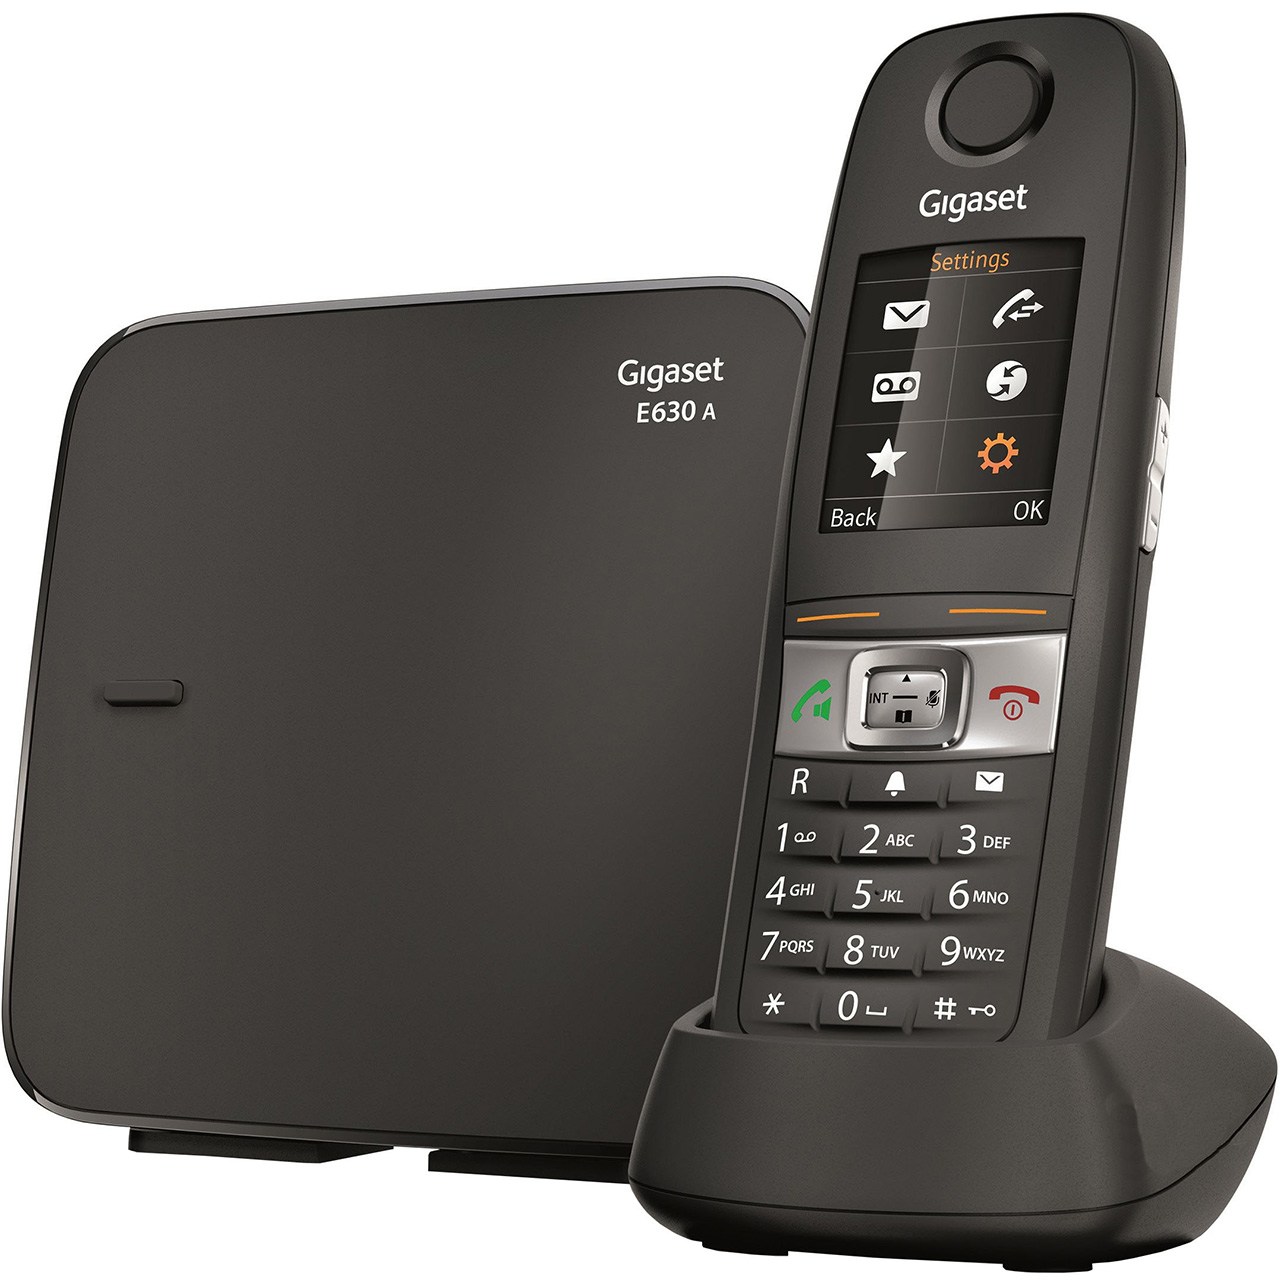 نکته خرید - قیمت روز تلفن بی سیم گیگاست مدل E630A خرید